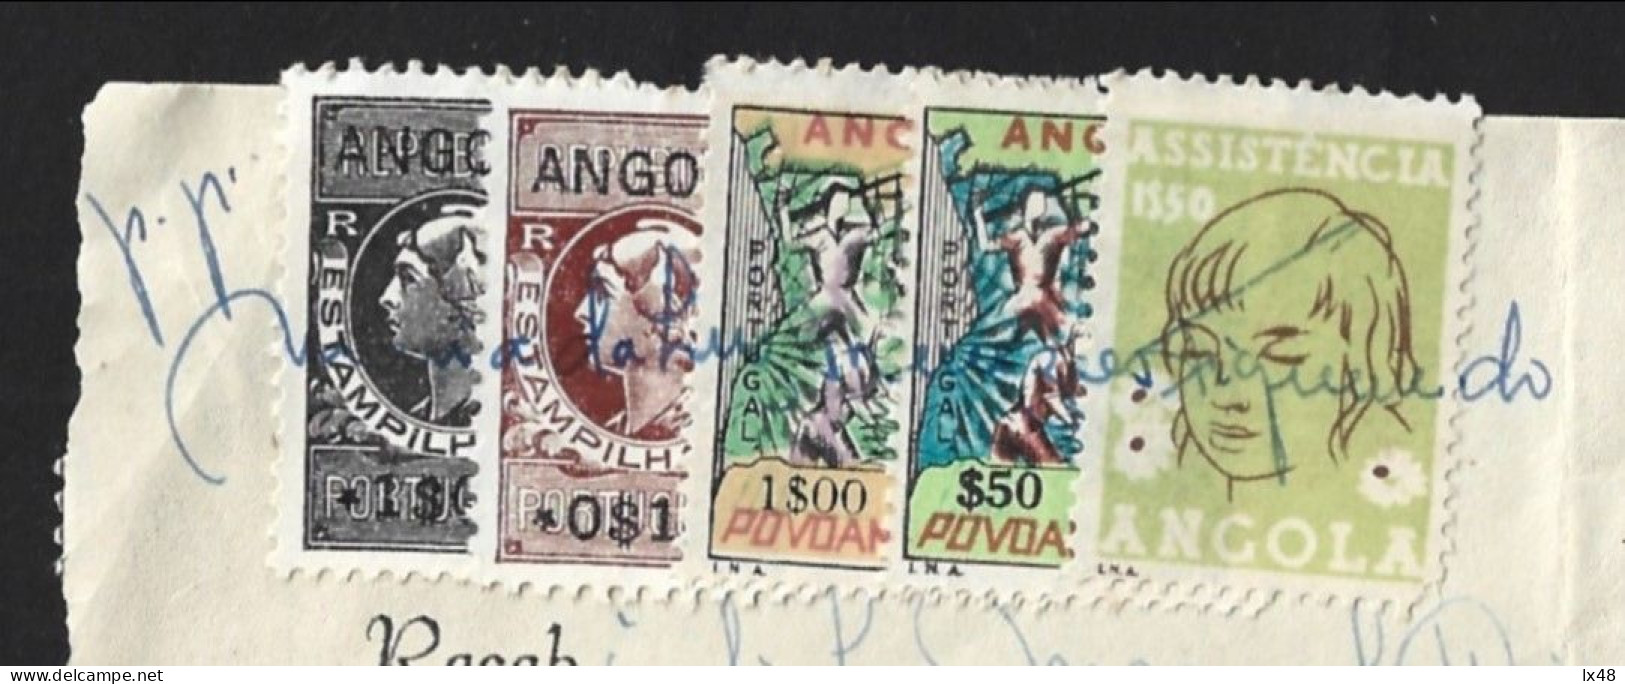 Recibo De Angola 1971 Com Stamps Assistência E Povoamento Utilizados Como Estampilha Fiscal. Angola Receipt From 1971 Wi - Lettres & Documents